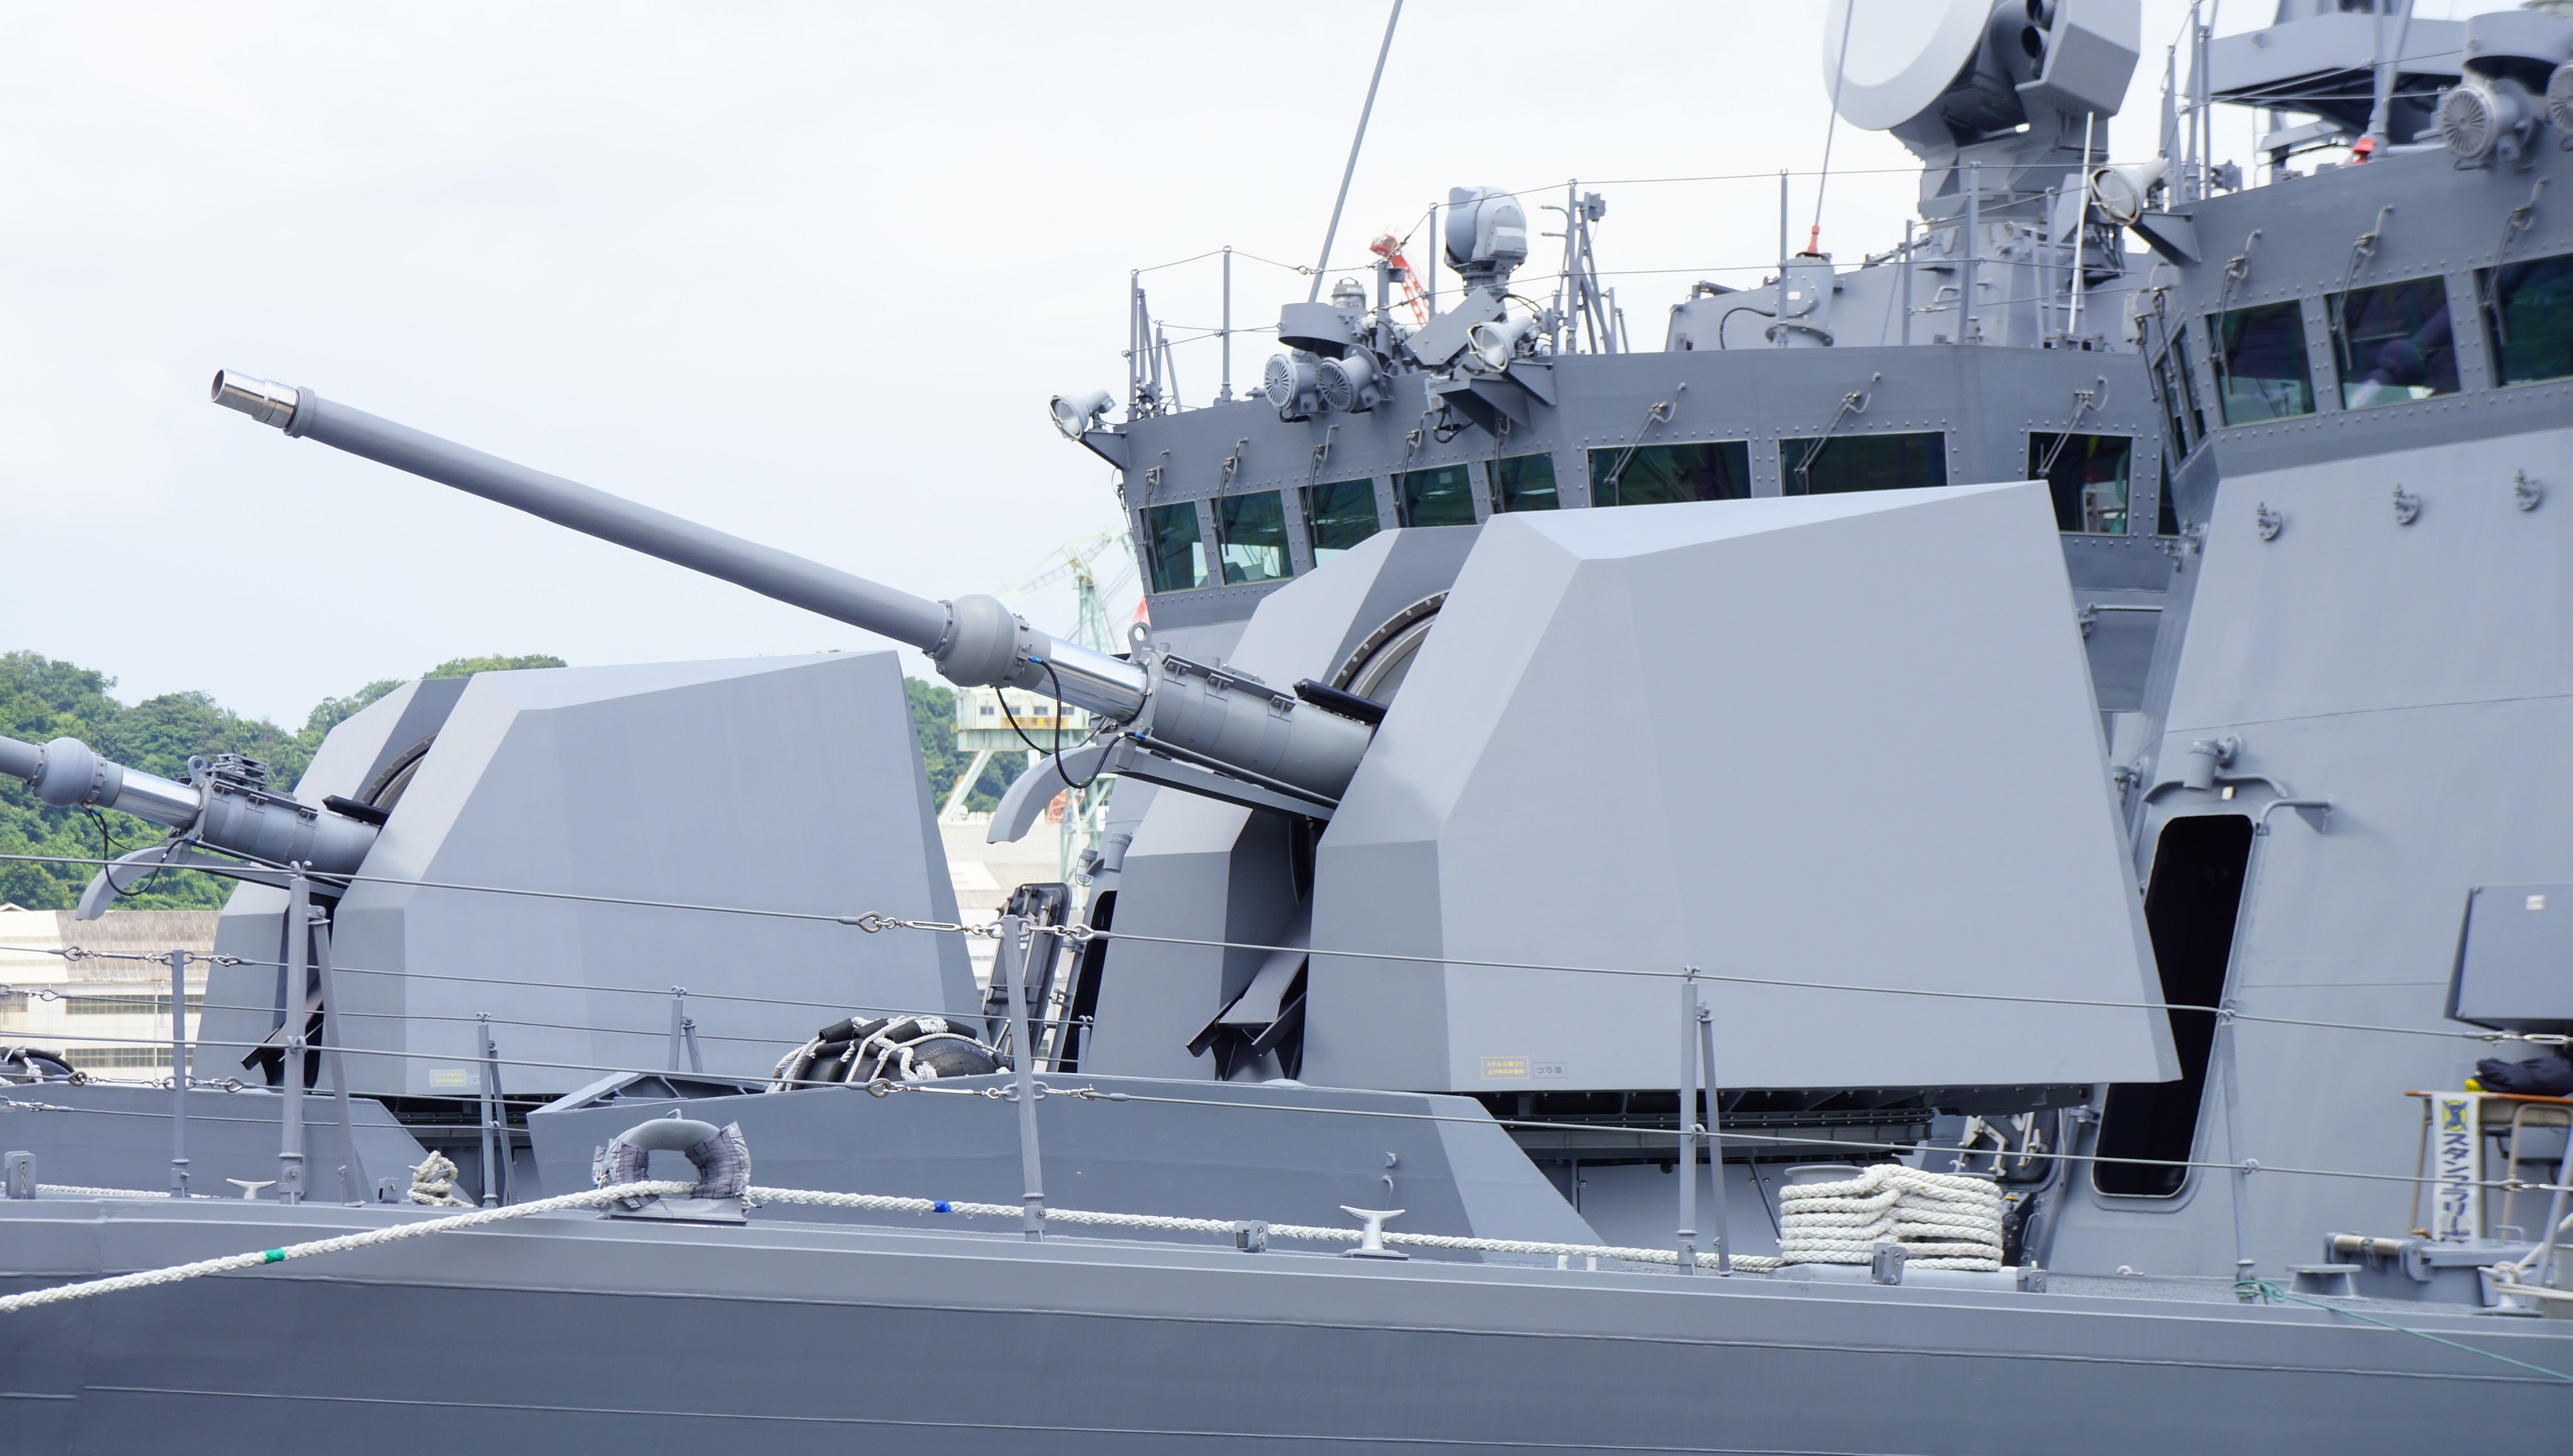 OTO_Melara_76mm_gun_mounted_on_JS_Hayabusa%28PG-824%29_left_front_view_at_JMSDF_Maizuru_Naval_Base_July_27%2C_2014.jpg